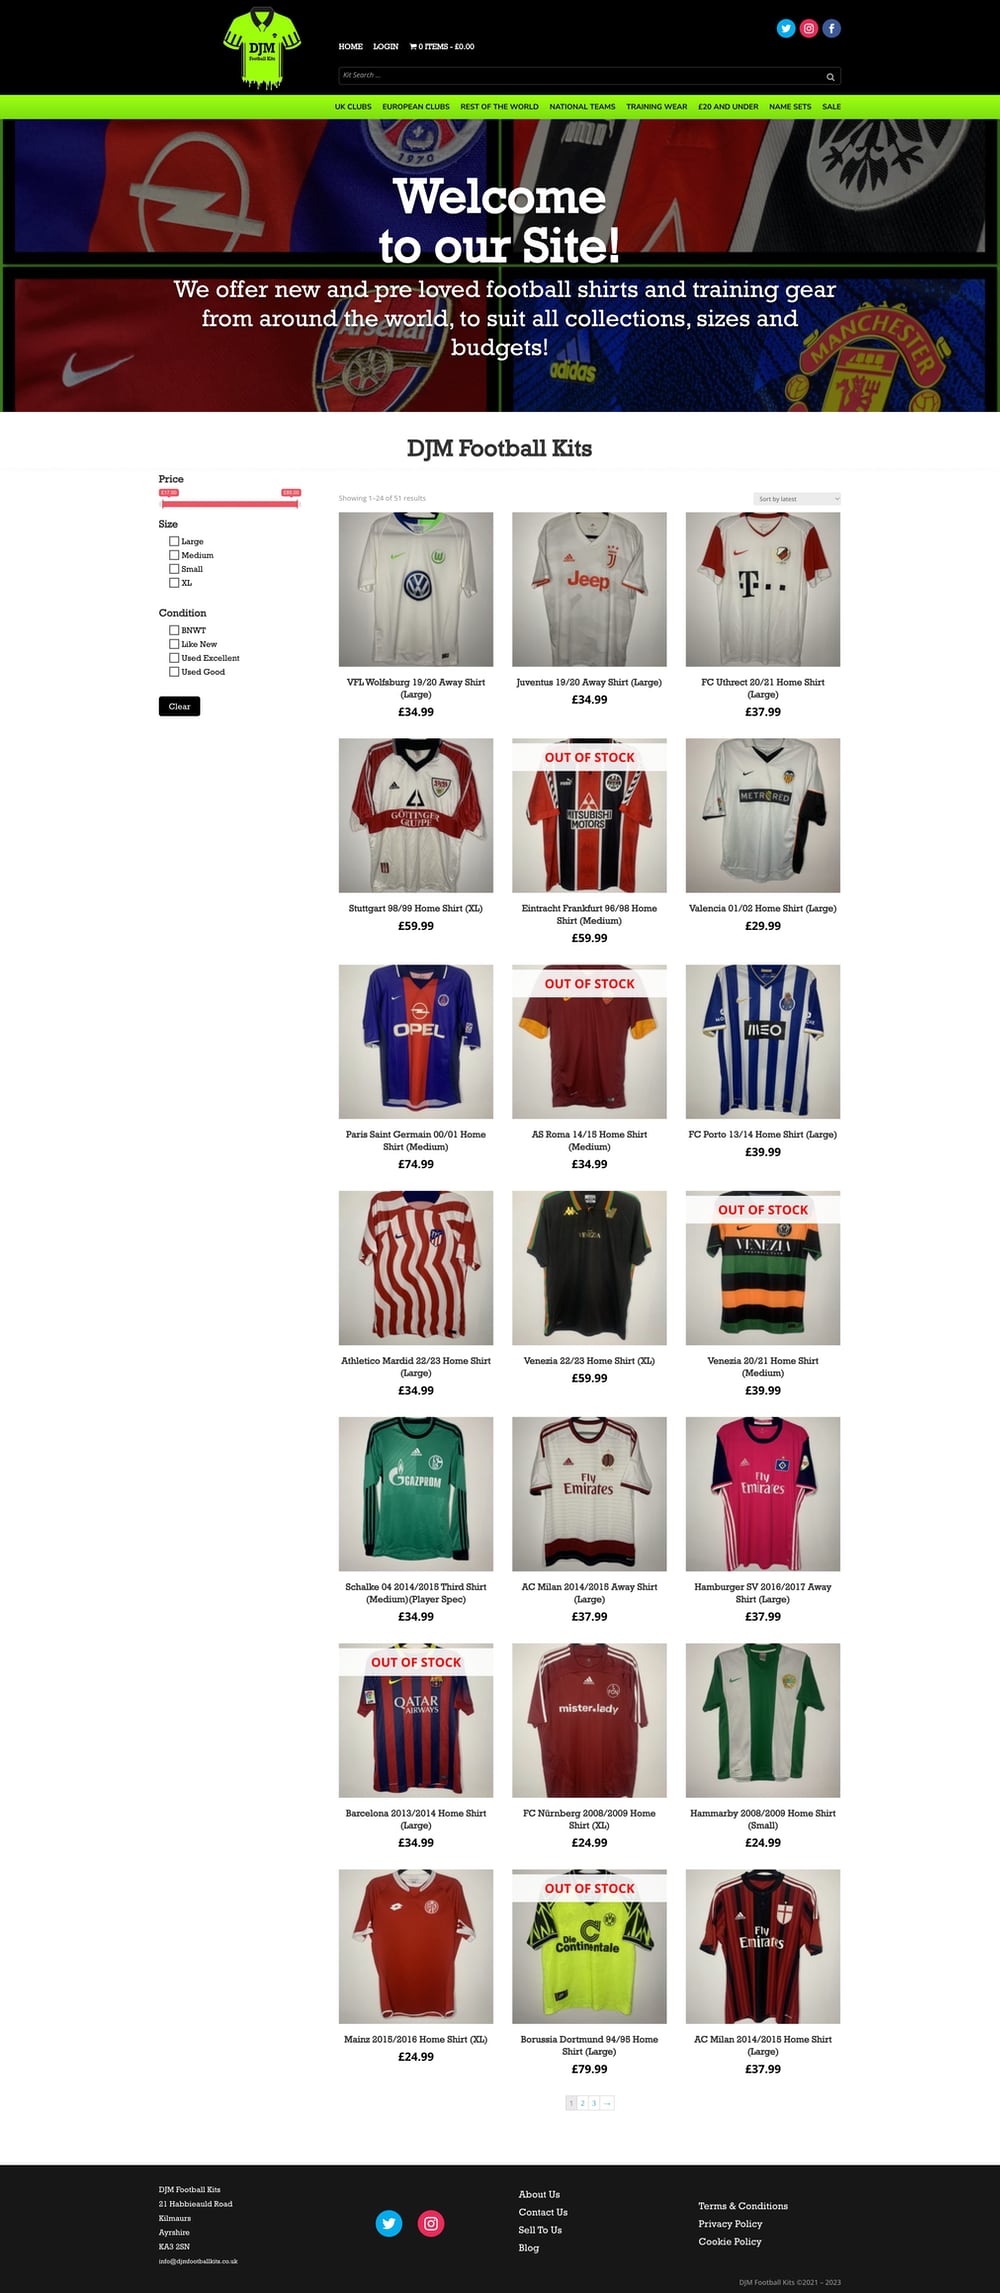 DJM Football Kits